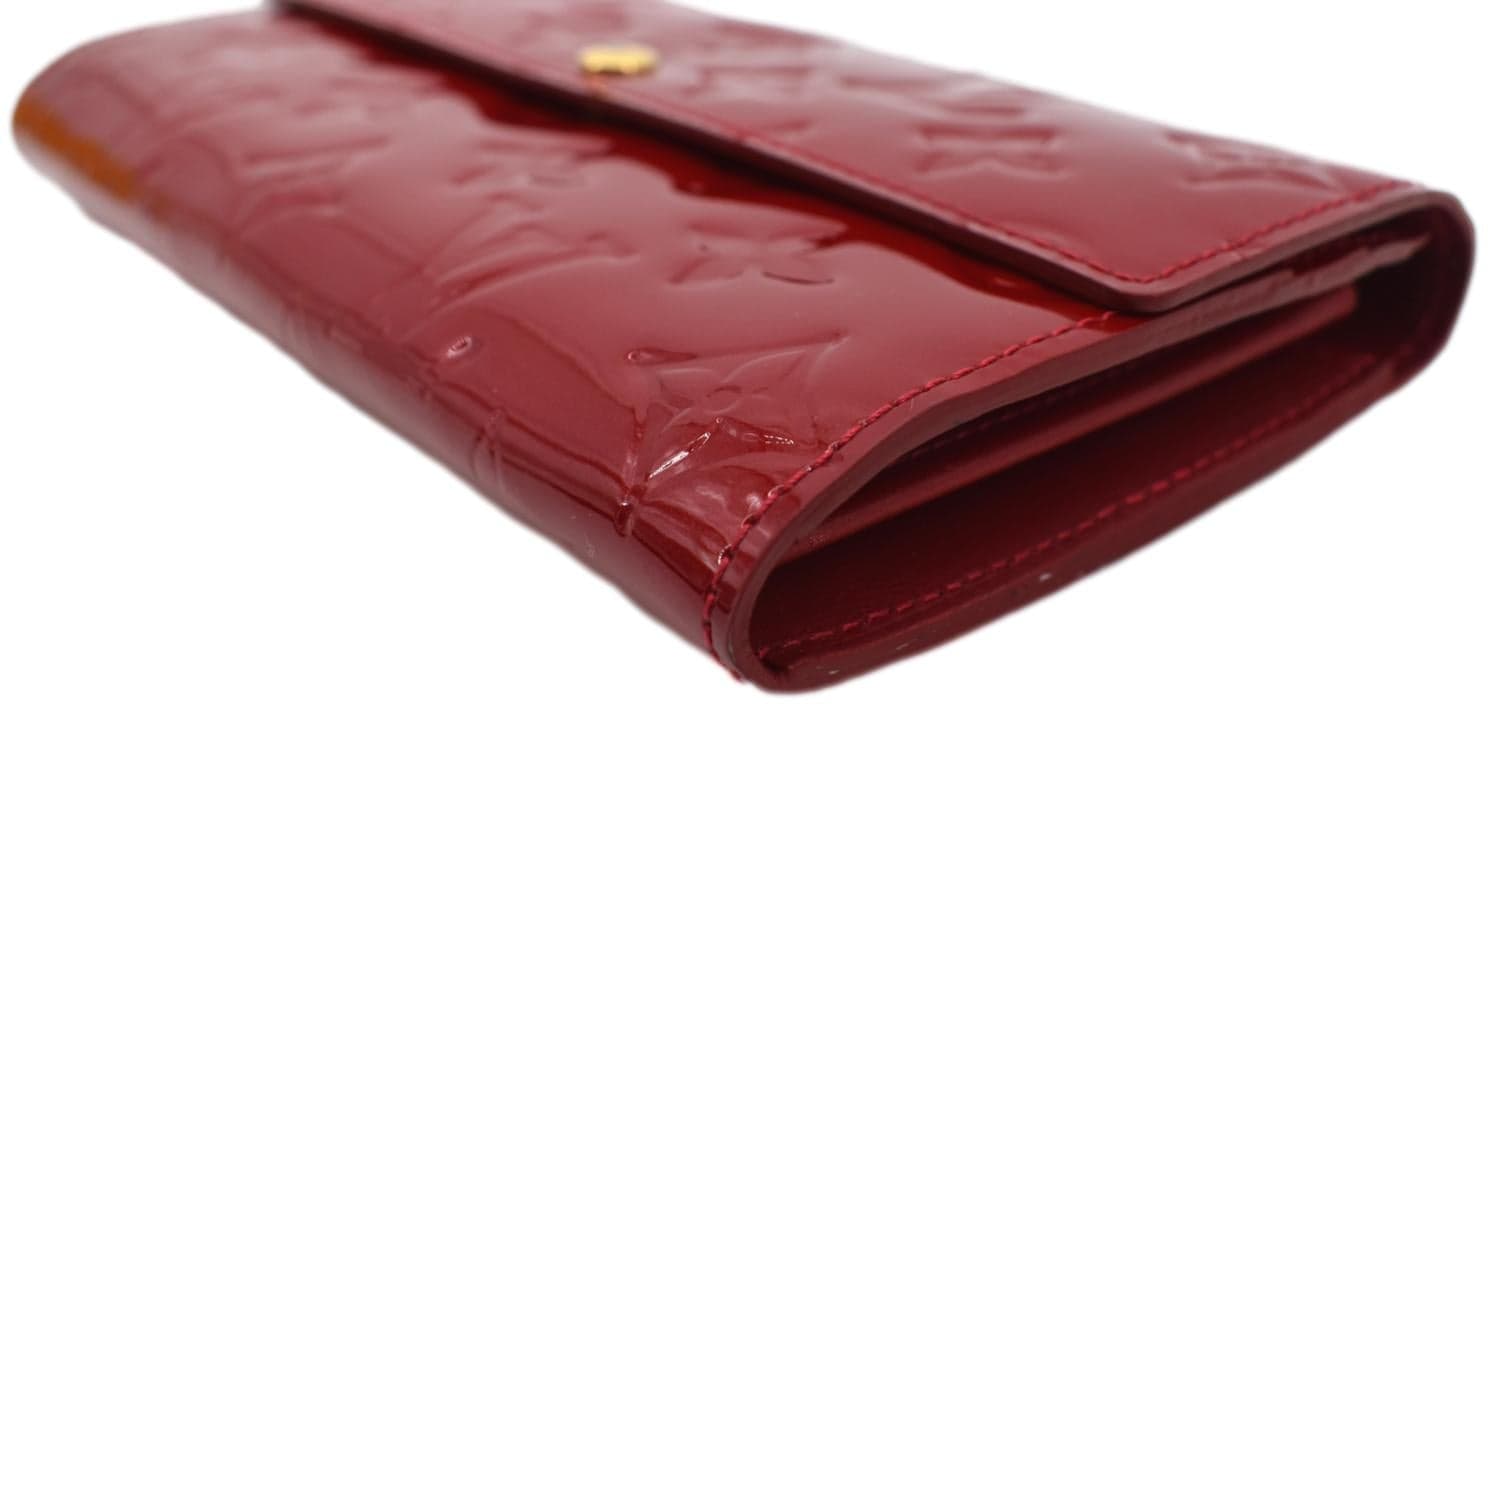 Louis Vuitton, Bags, Authentic Rare Louis Vuitton Clean Monogram Sarah  Wallet W Red Accents